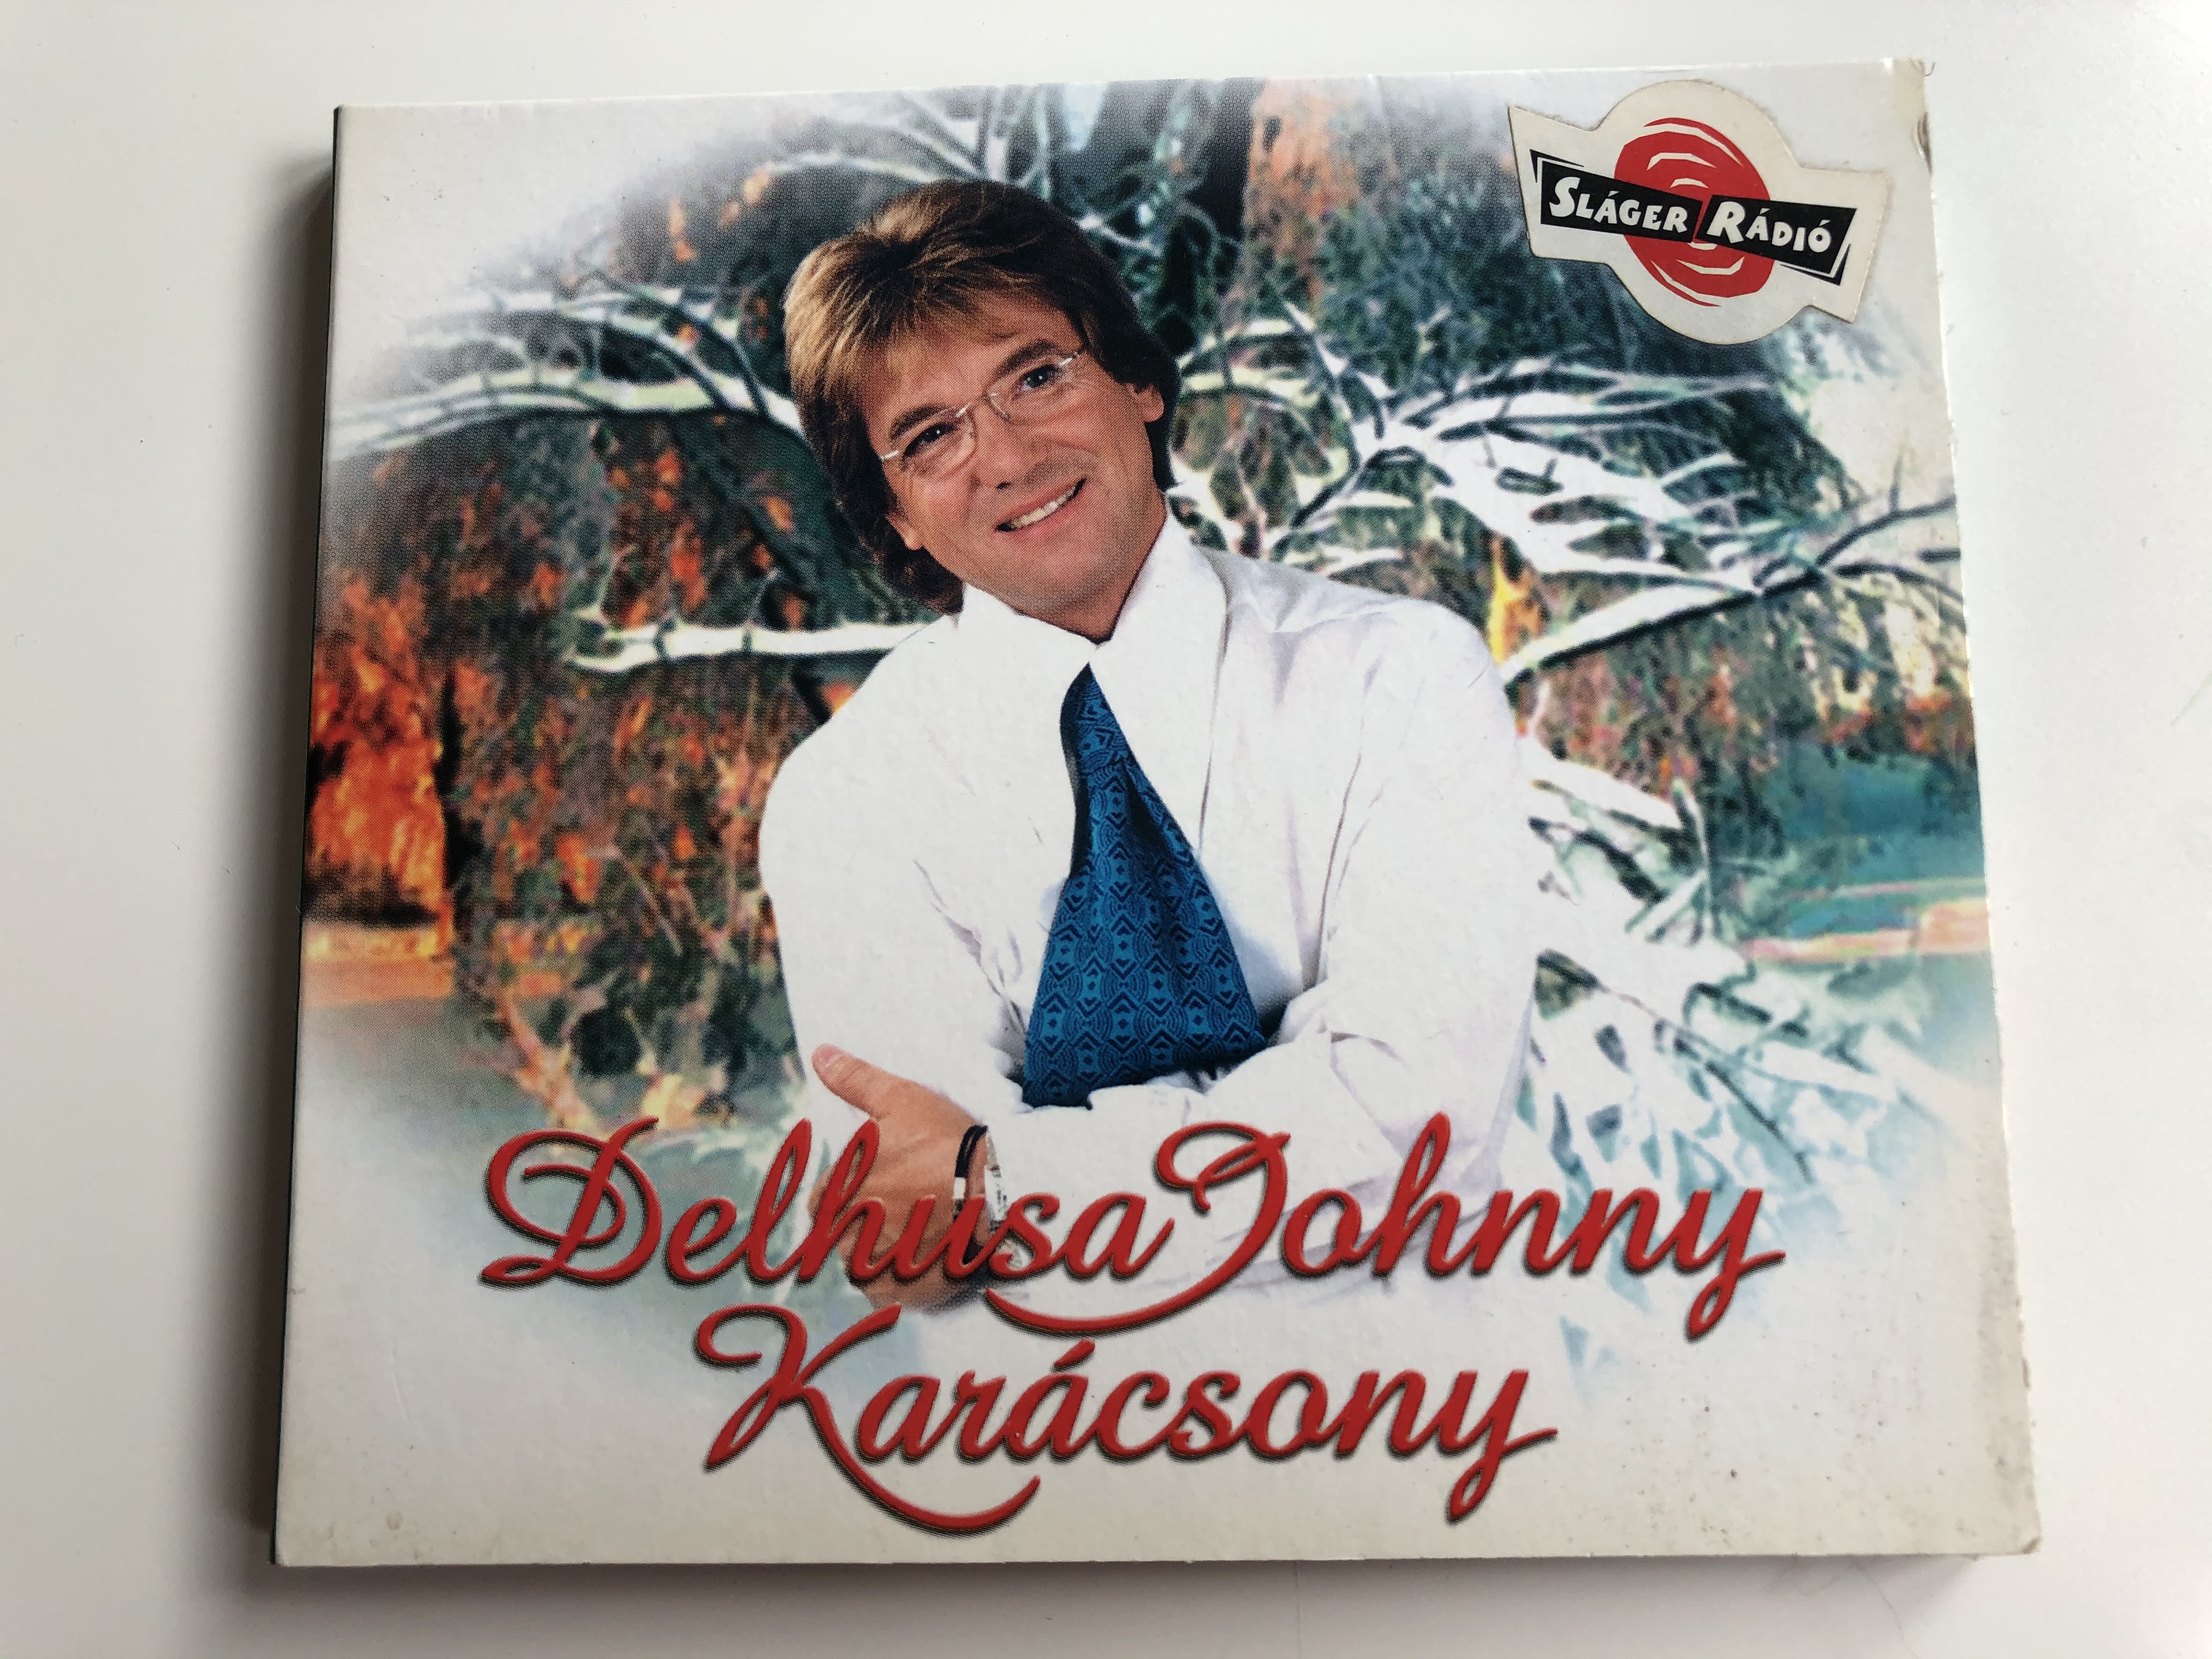 delhusa-johnny-kar-csony-delhusa-records-audio-cd-2001-cdd-012-1-.jpg